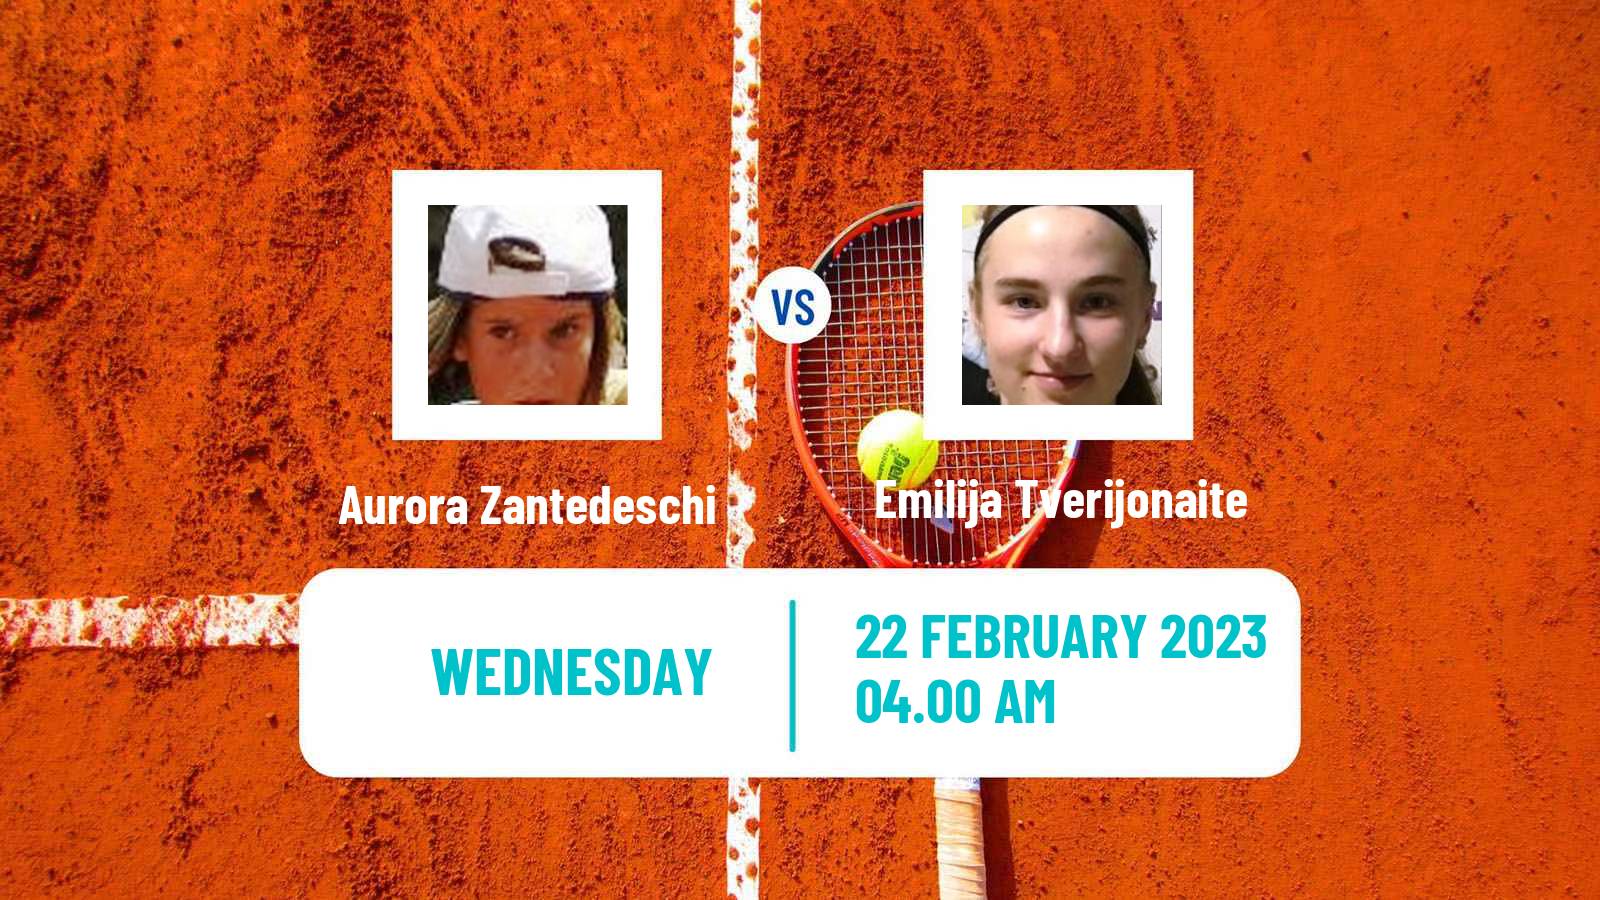 Tennis ITF Tournaments Aurora Zantedeschi - Emilija Tverijonaite